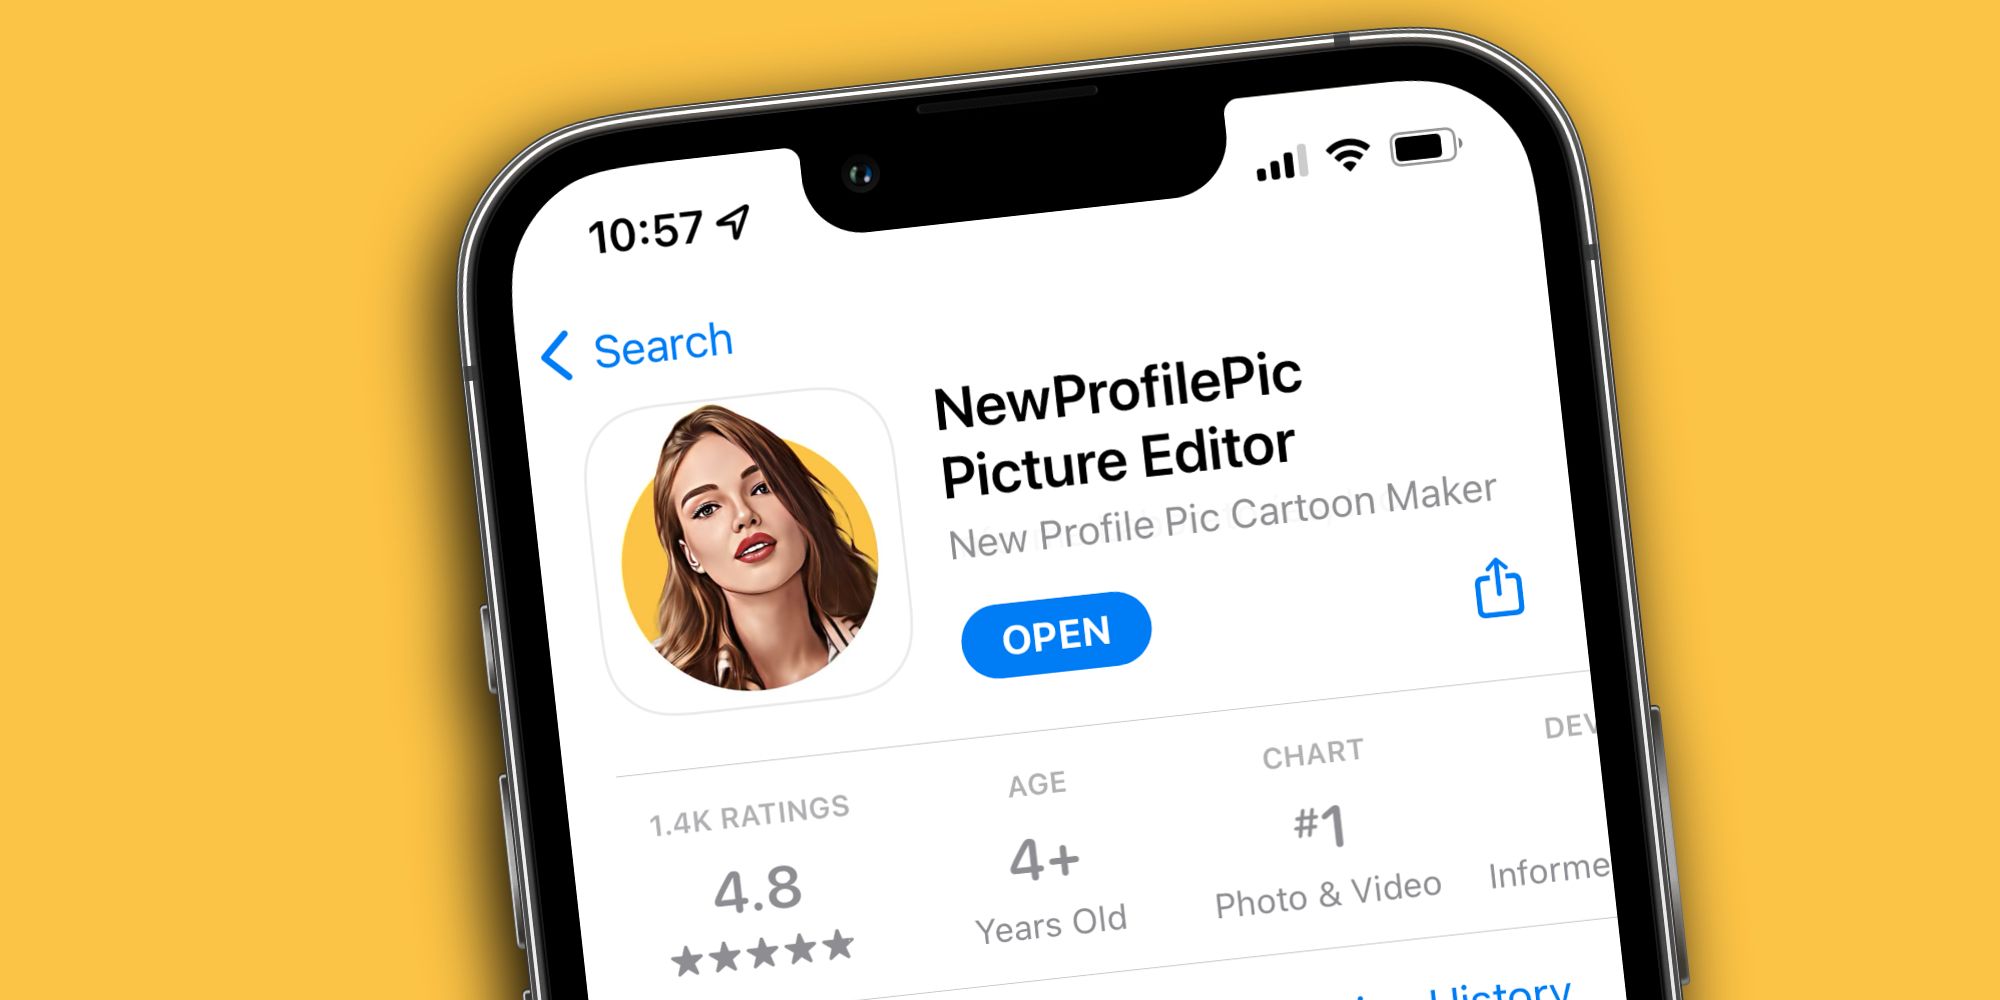 ¿Qué es la nueva aplicación Profile Pic y cómo se usa?